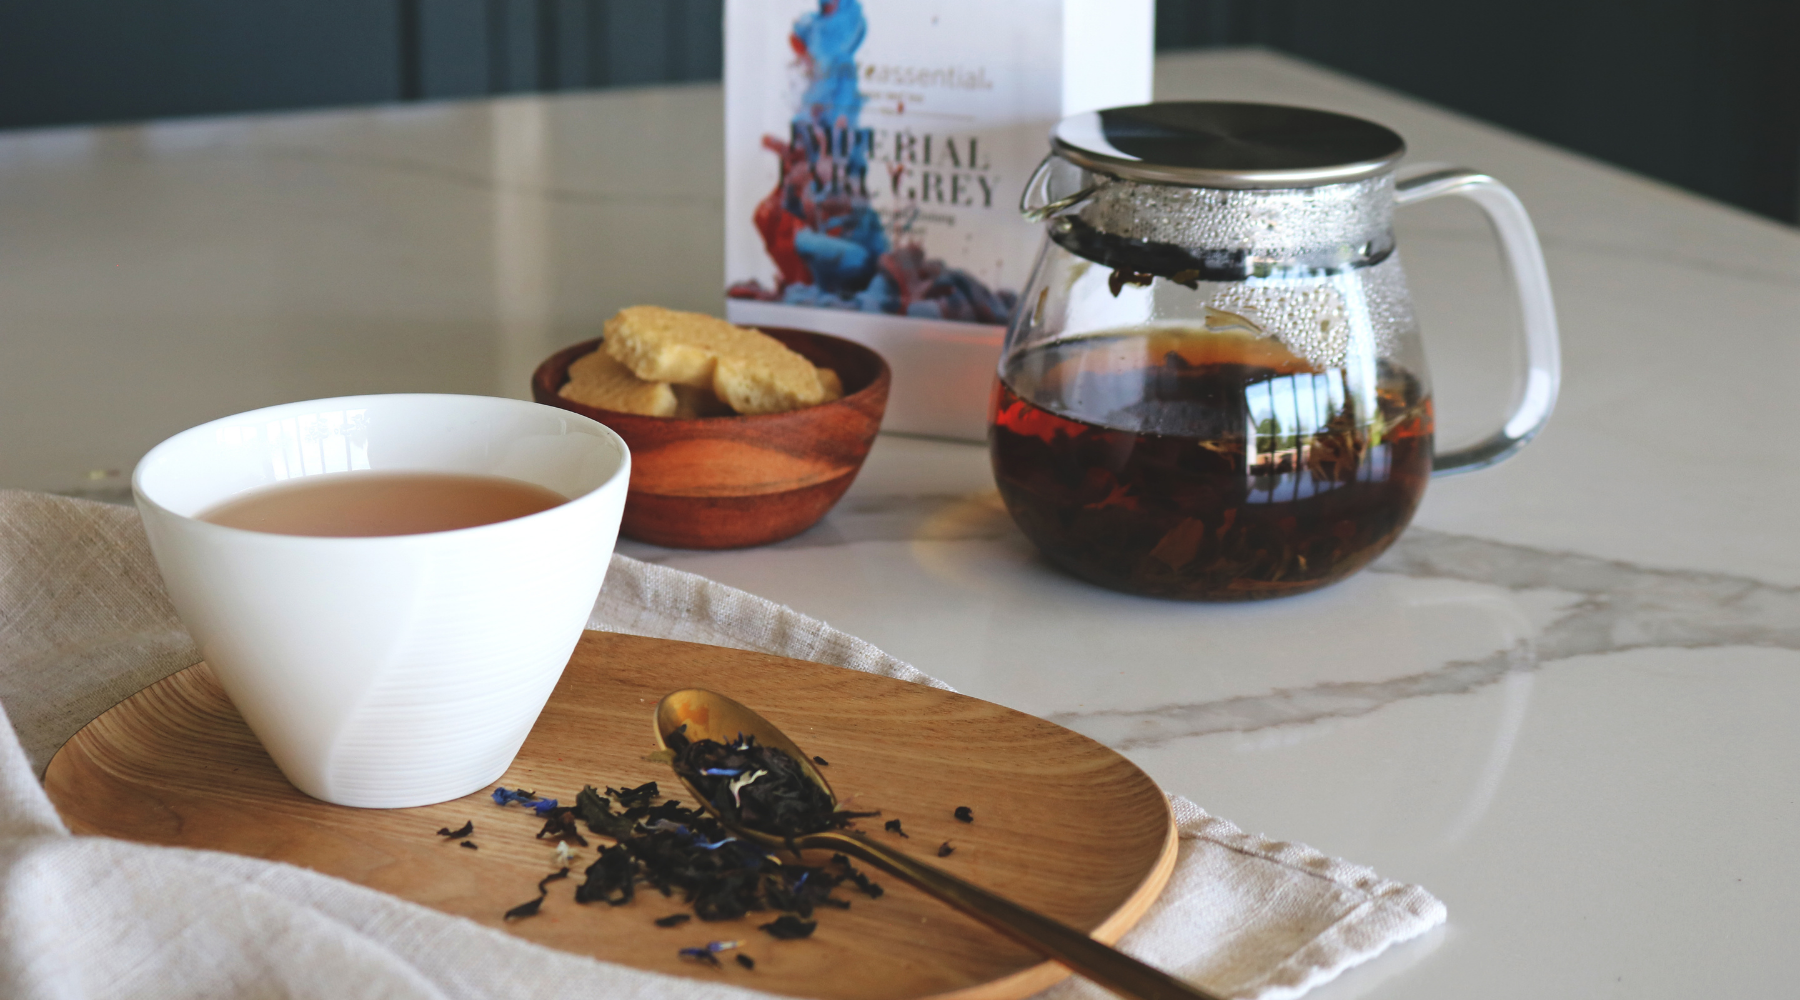 Imperial Earl Grey loose leaf tea in pot